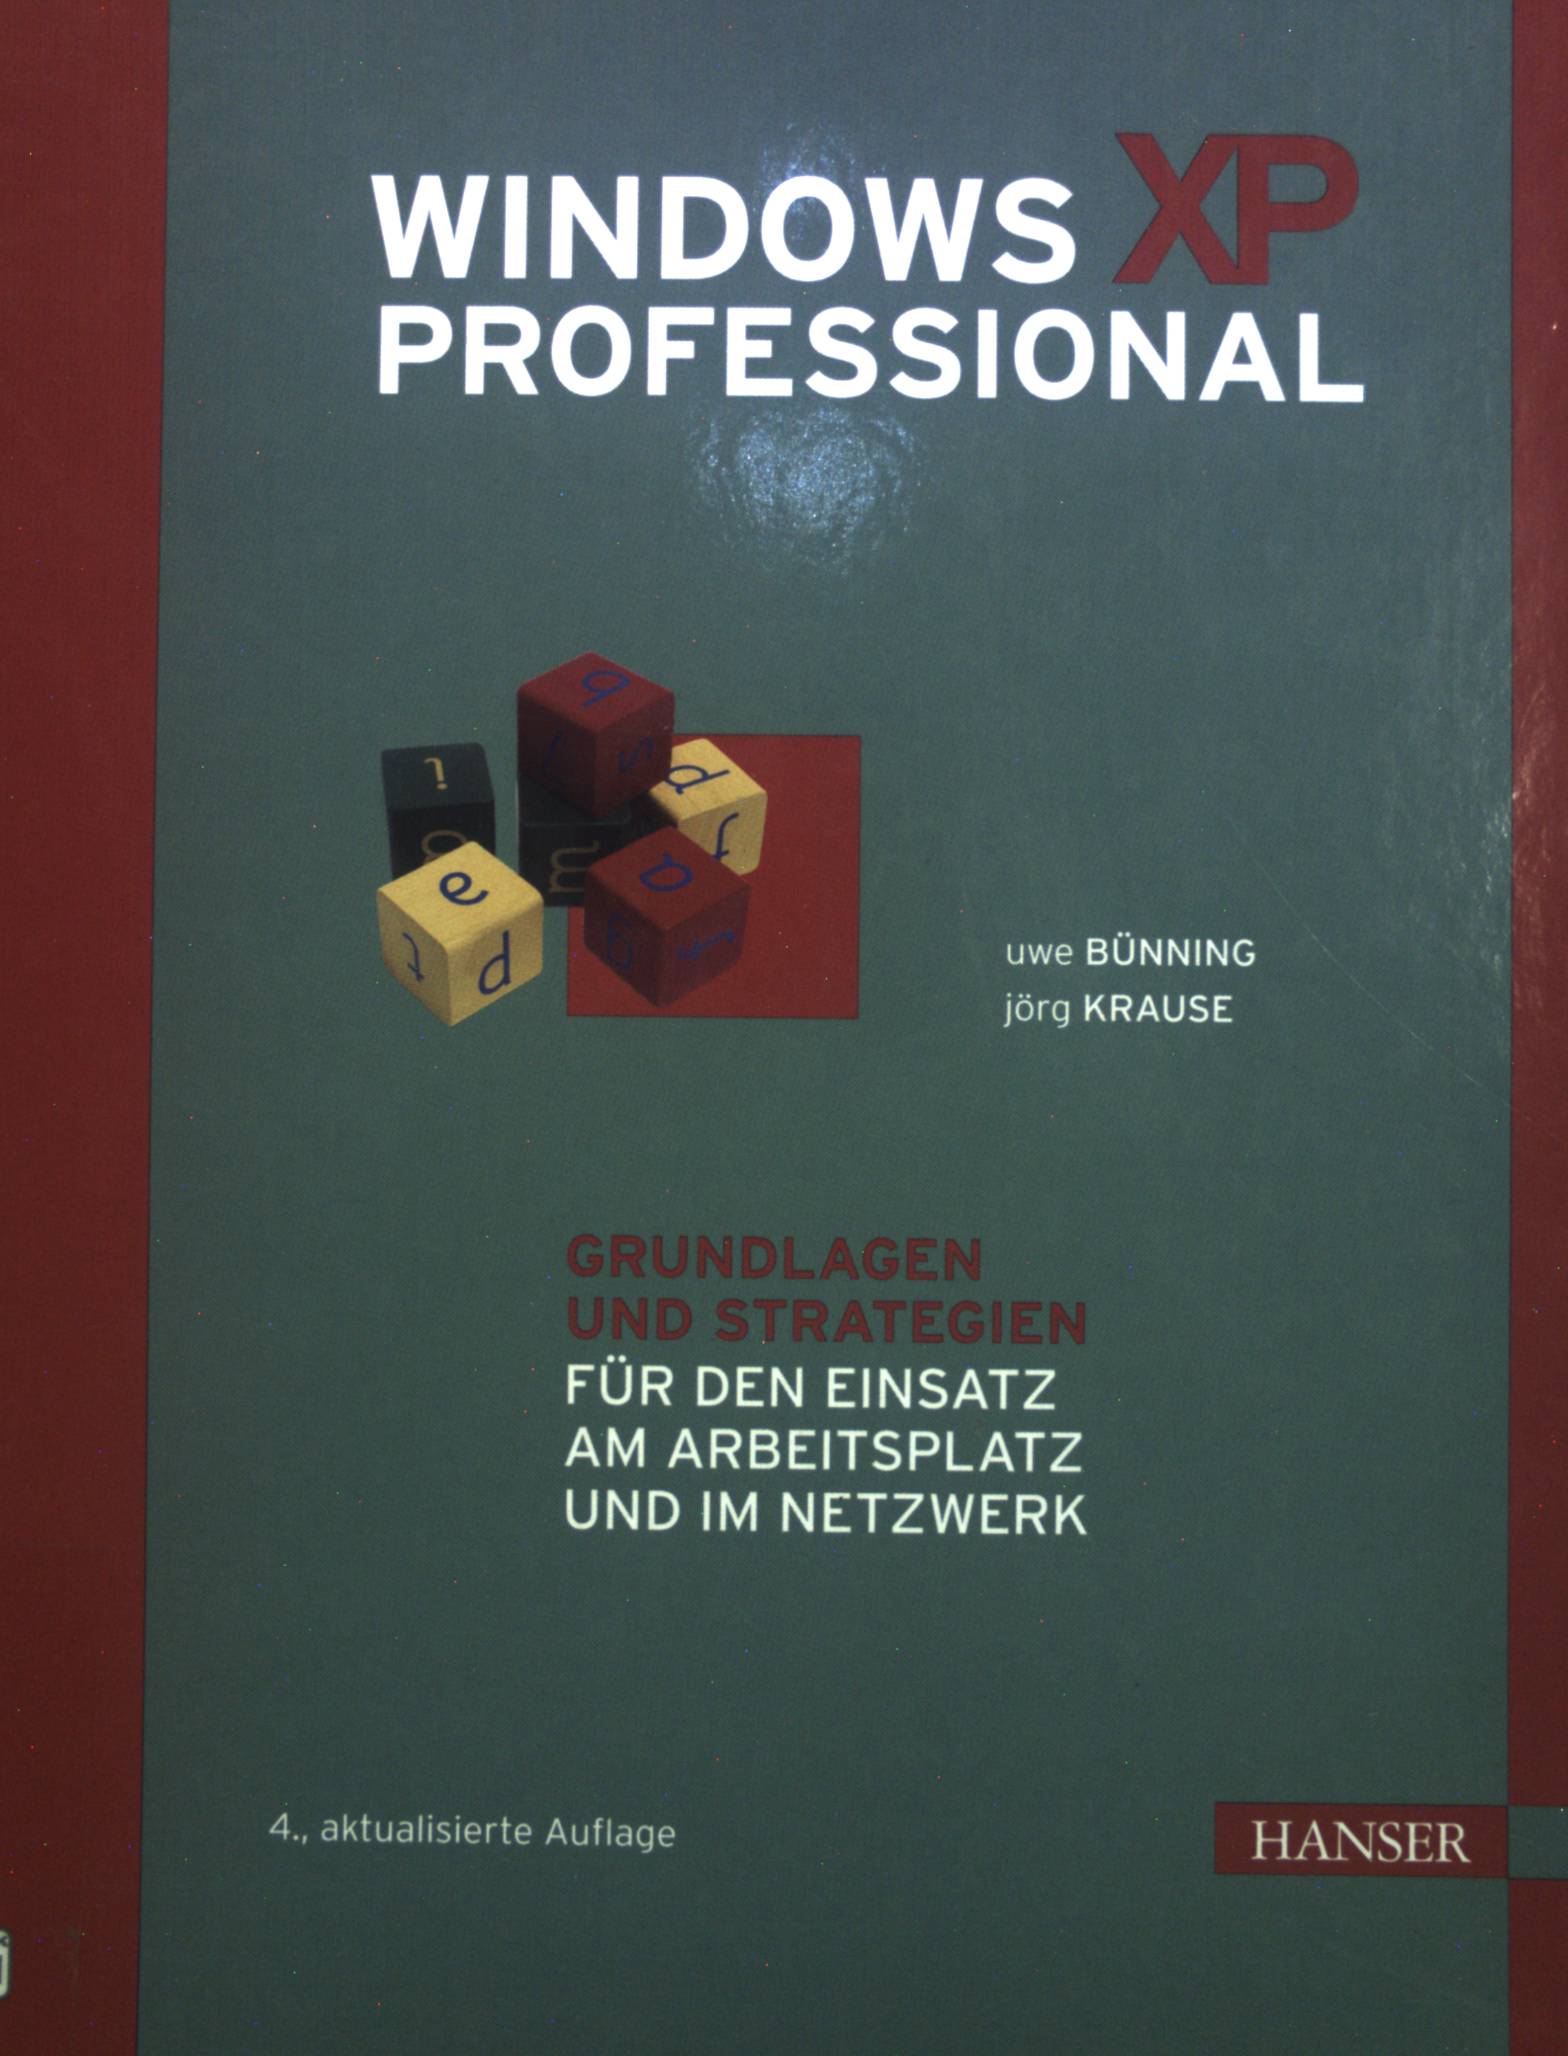 Windows XP Professional: Grundlagen und Strategien für den Einsatz am Arbeitsplatz und im Netzwerk - Bünning, Uwe und Jörg Krause